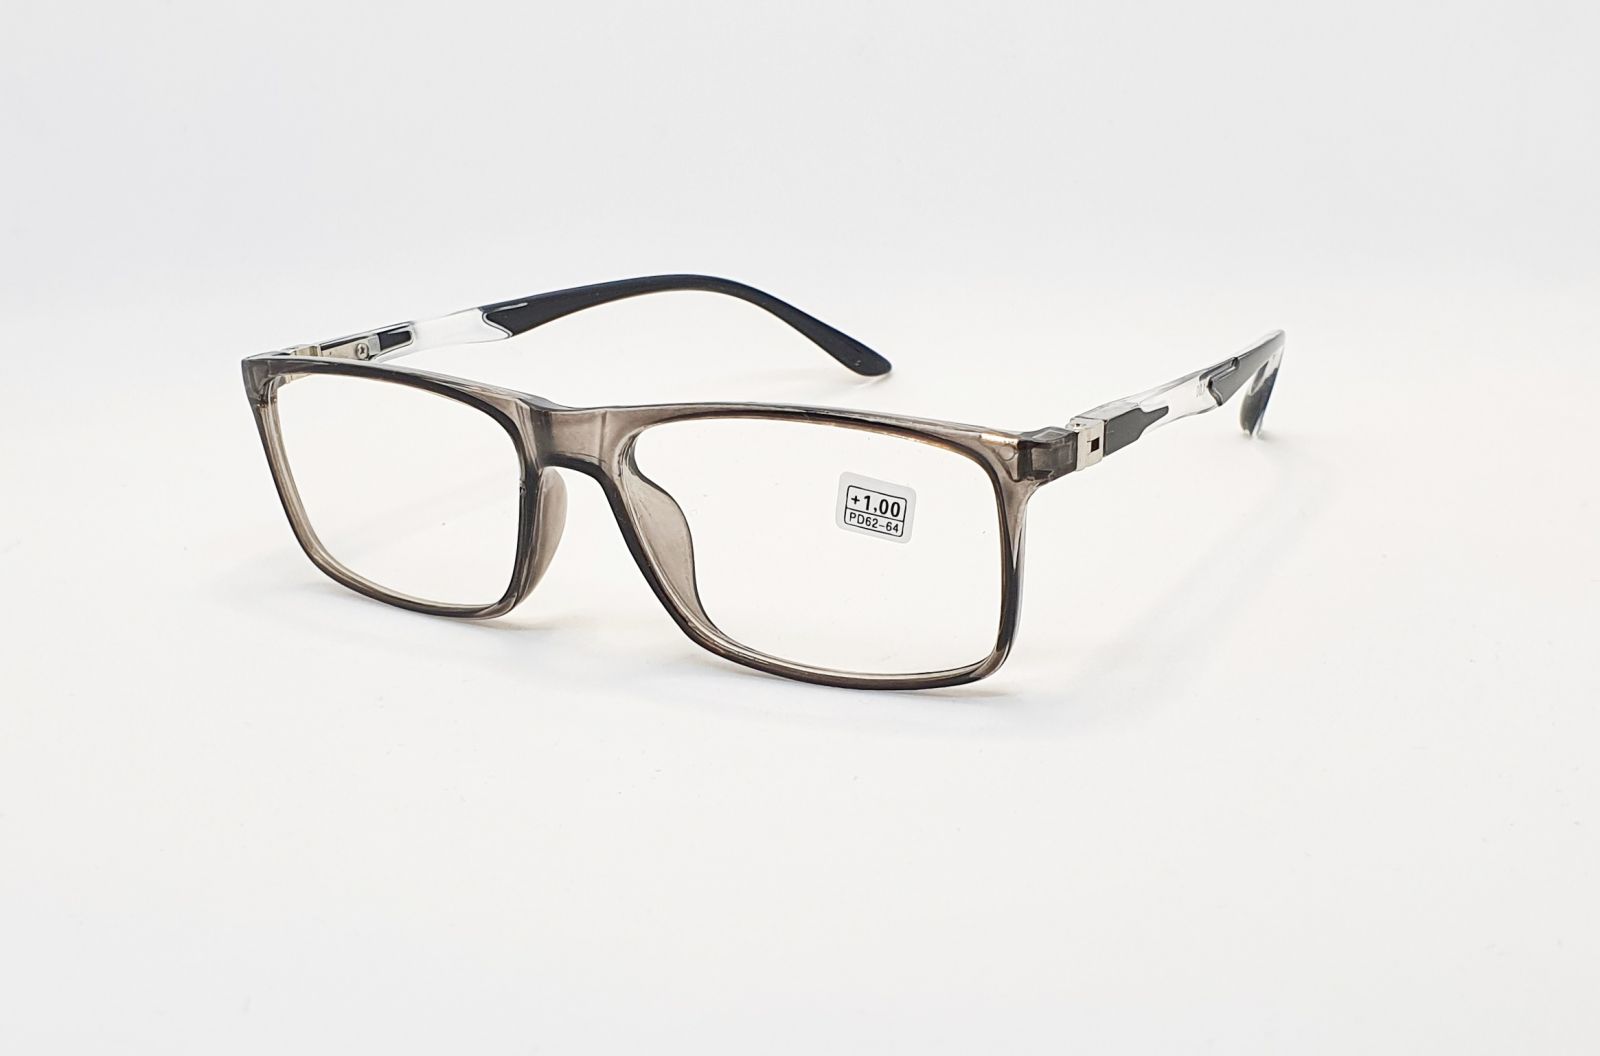 Dioptrické brýle CH8811 +2,00 grey flex